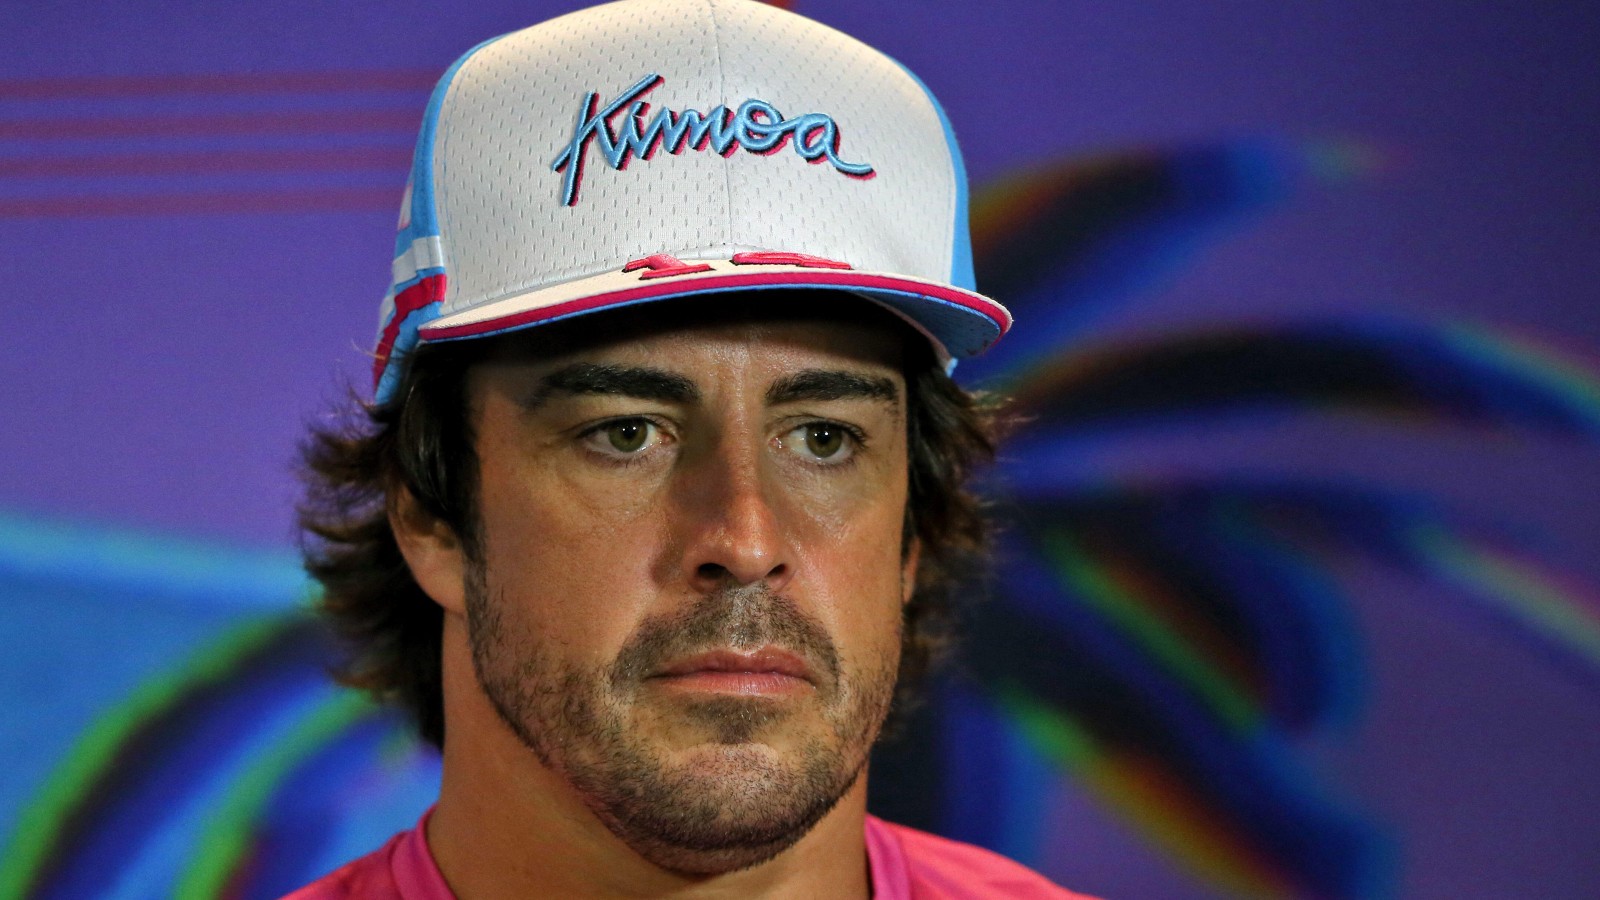 Fernando Alonso, Alpine, wearing a Kimoa cap. United States, May 2022.